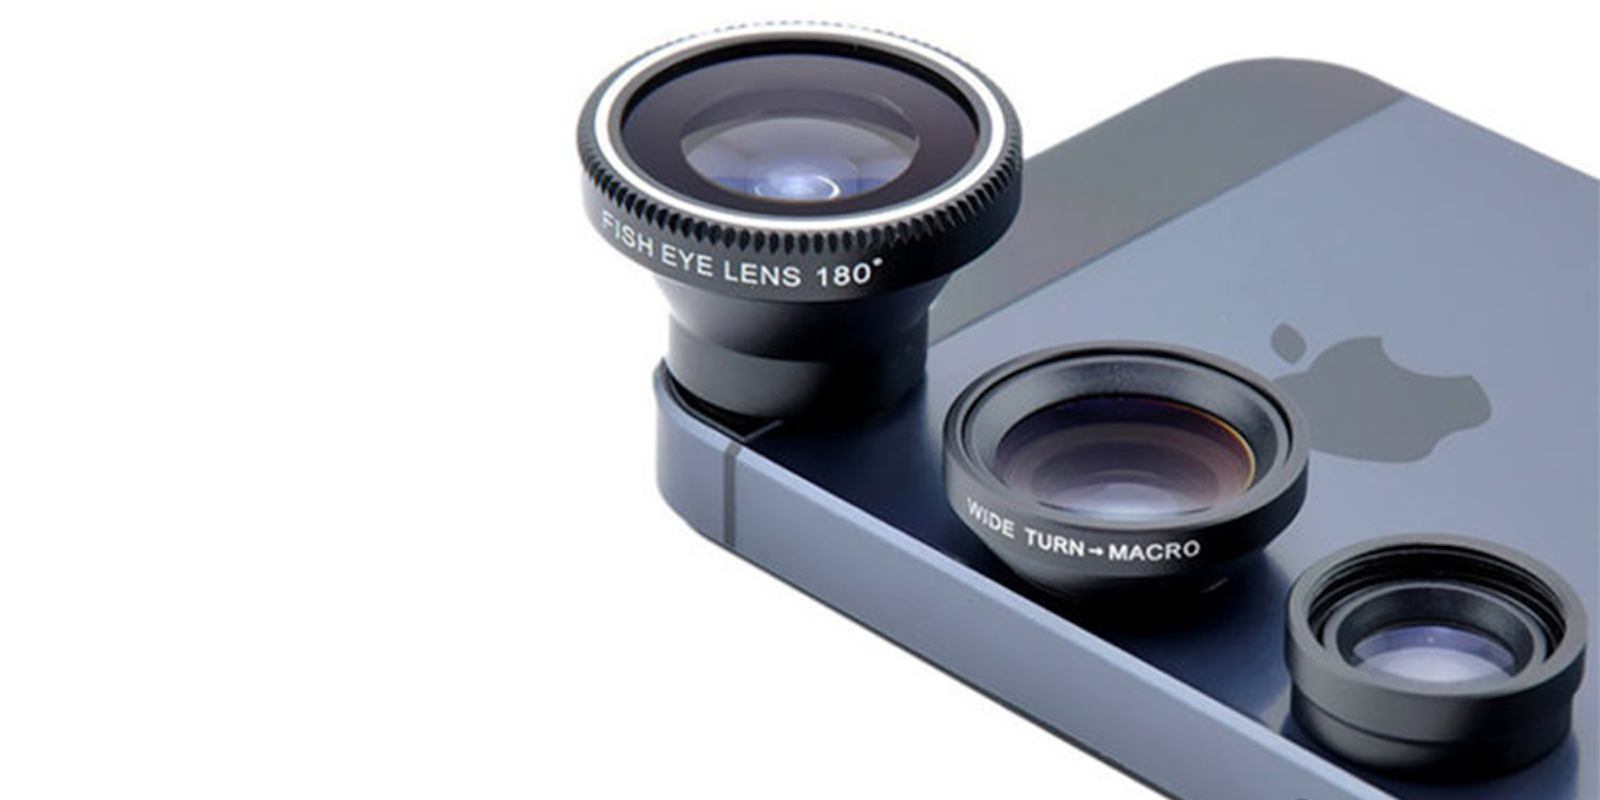 smartphone camera lens